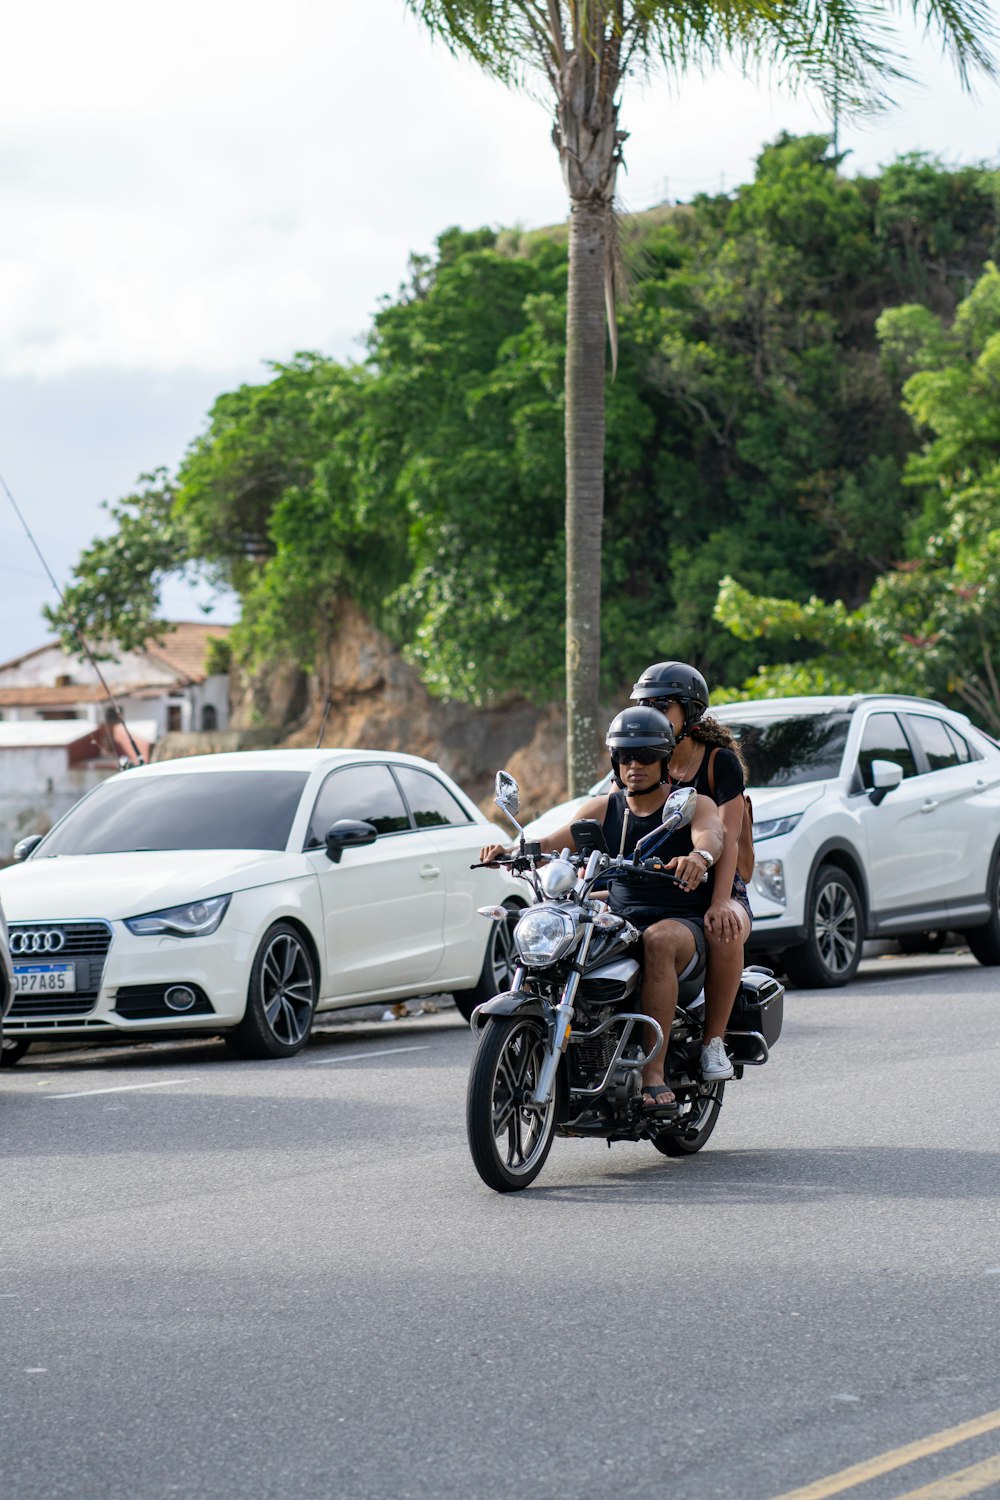 Zwei Personen fahren mit einem Motorrad eine Straße entlang